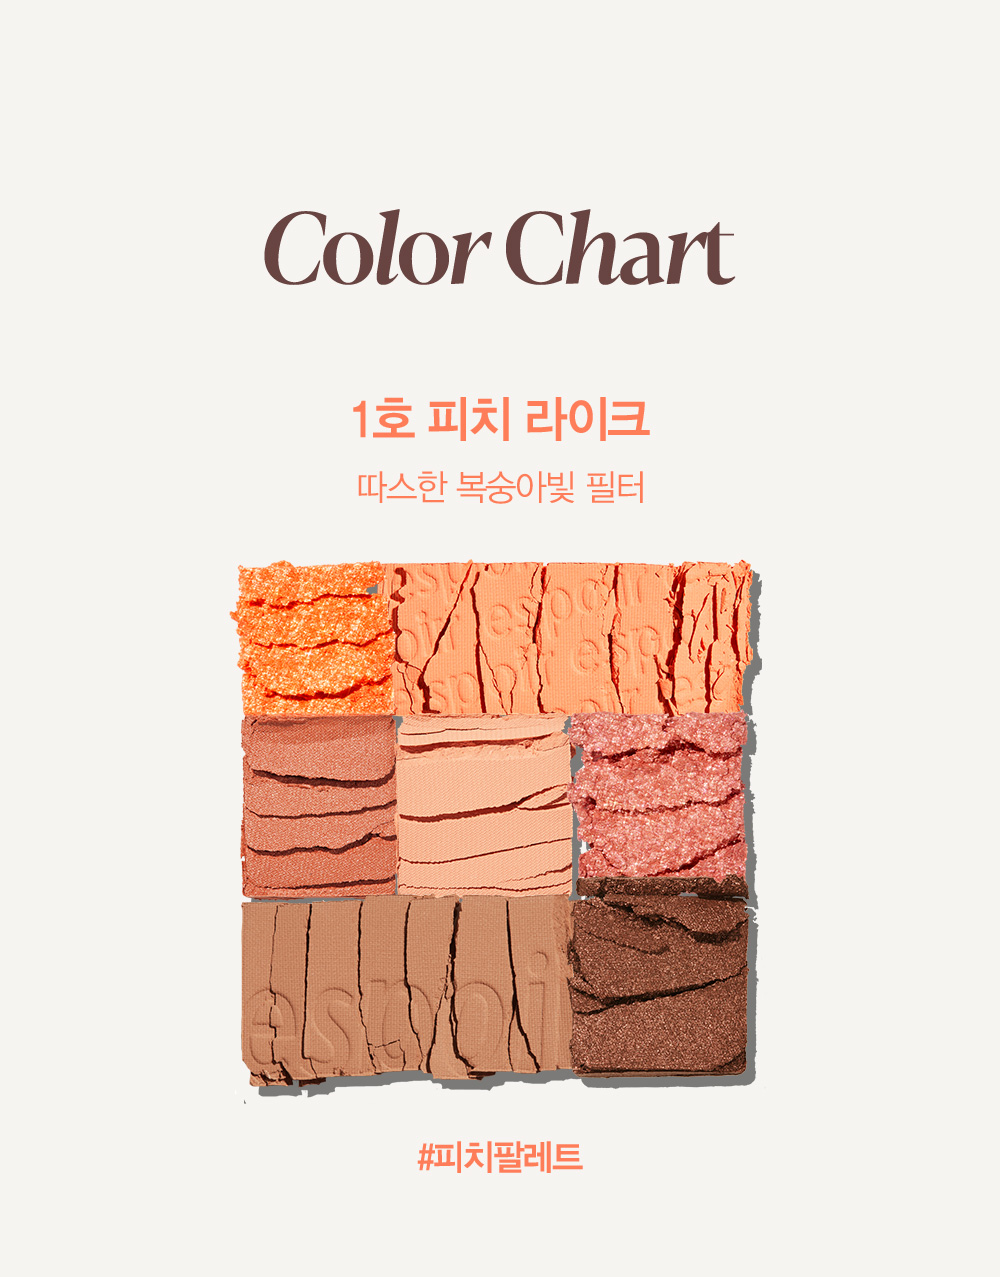 Color Chart 1호 피치 라이크 : 따스한 복숭아빛 필터 #피치팔레트